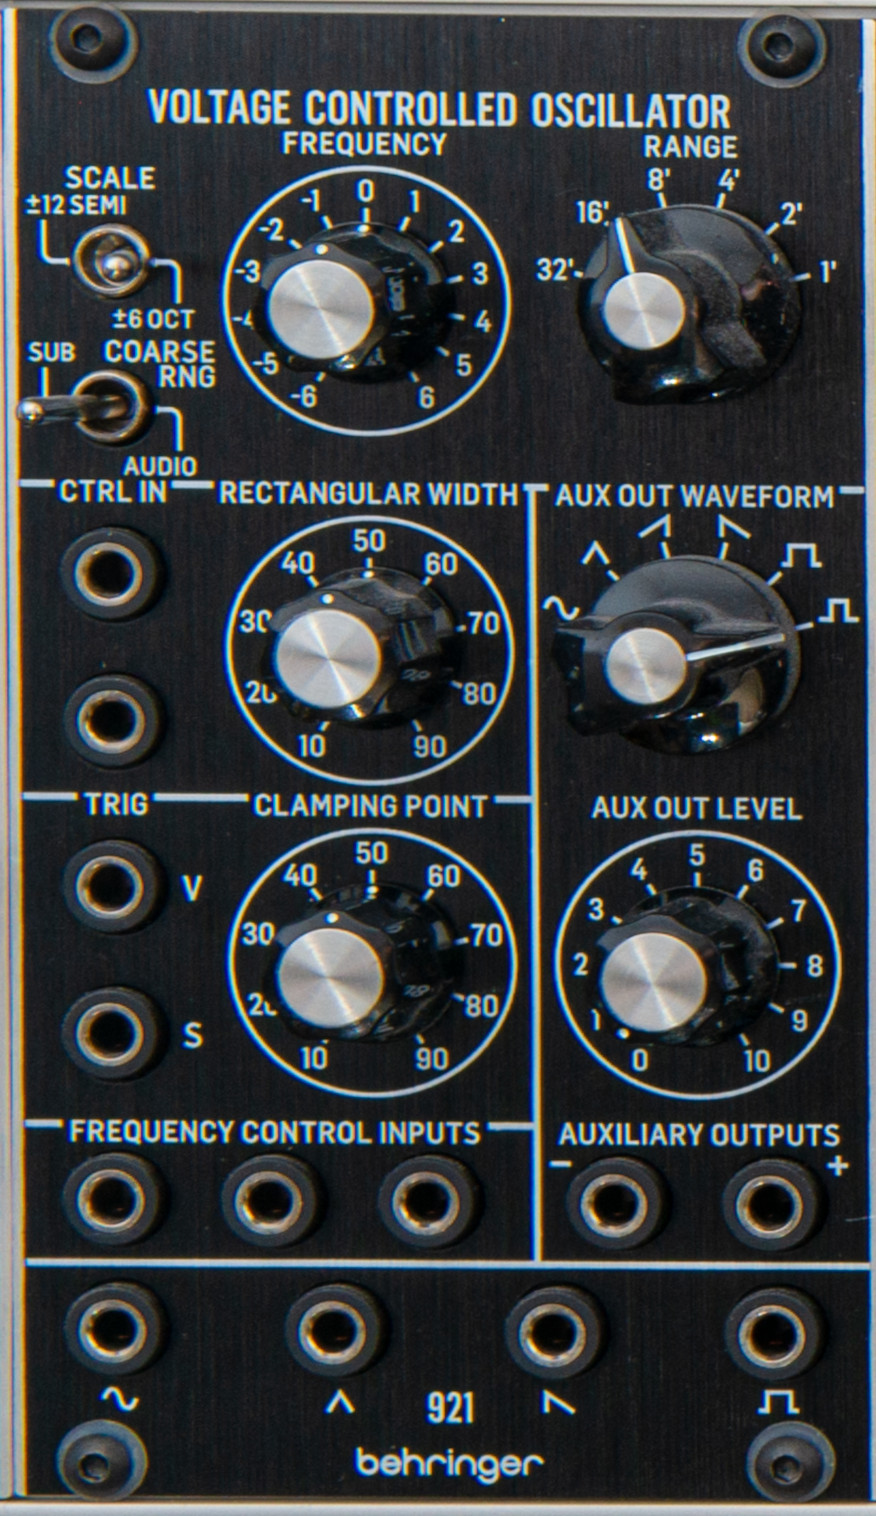 Behringer 921 VC Oscillator